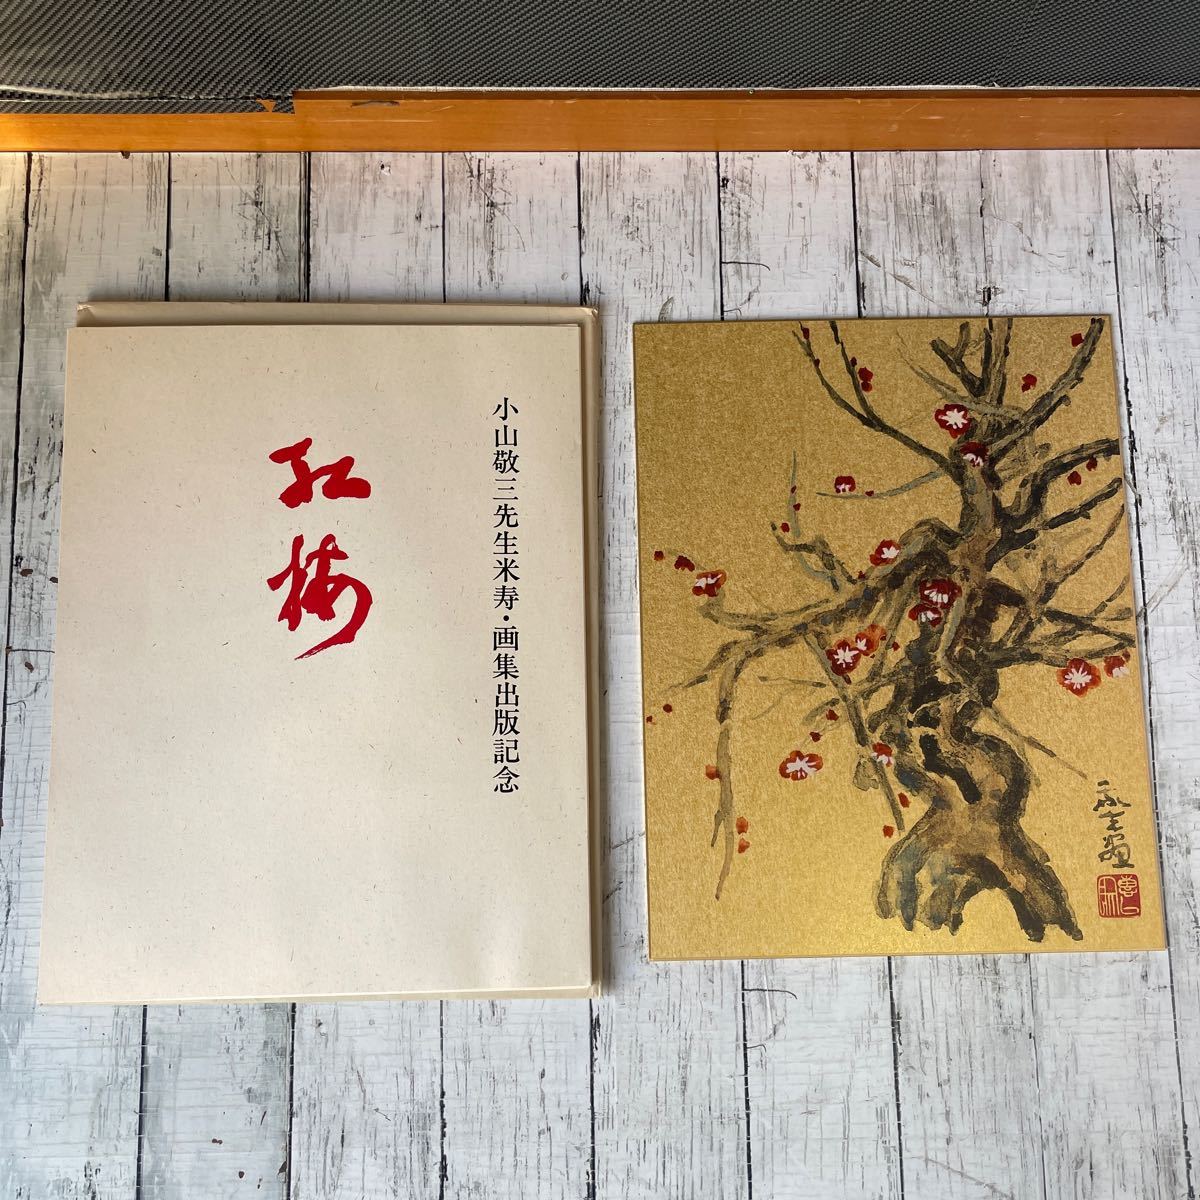 小山敬三先生米寿・画集出版記念 金彩色紙画「紅梅」_画像1